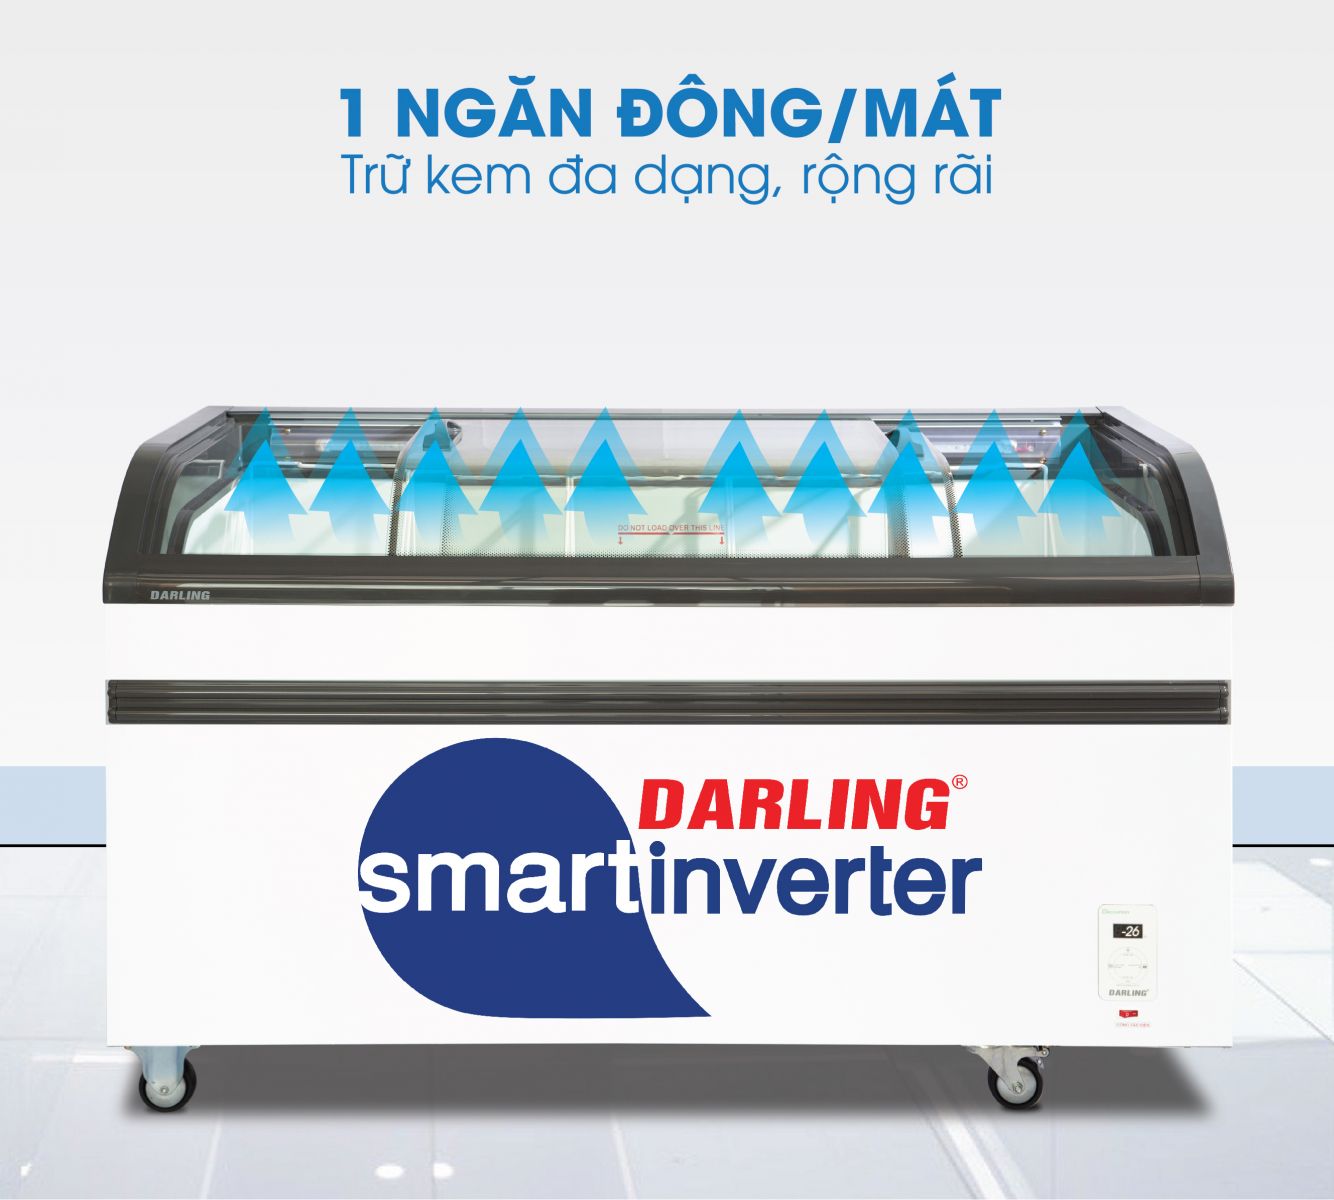 Tủ kem Darling DMF-9079ASKI 1 ngăn Đông/Mát tiện dụng